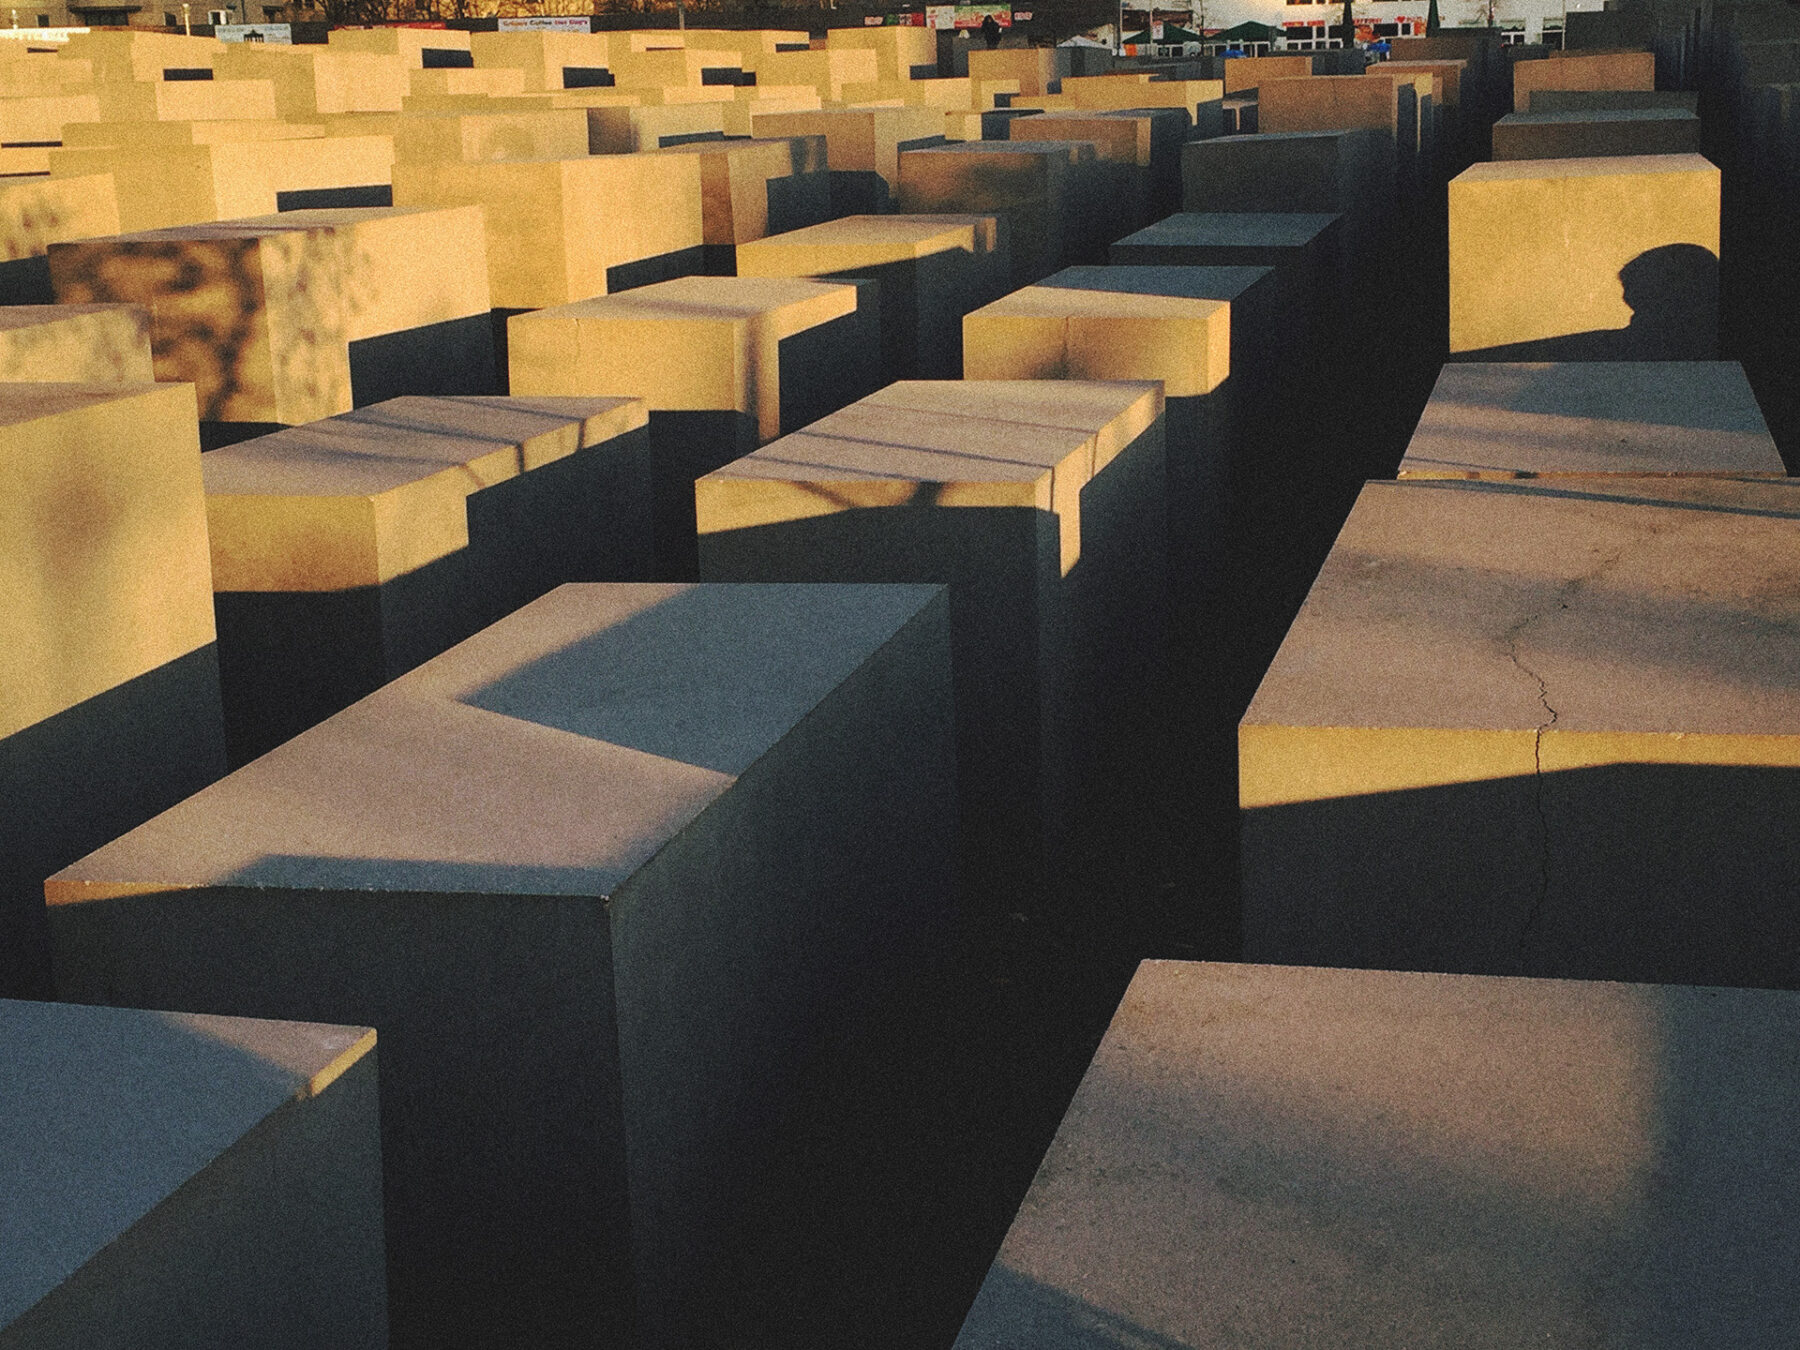 Memorial do Holocausto, Berlim